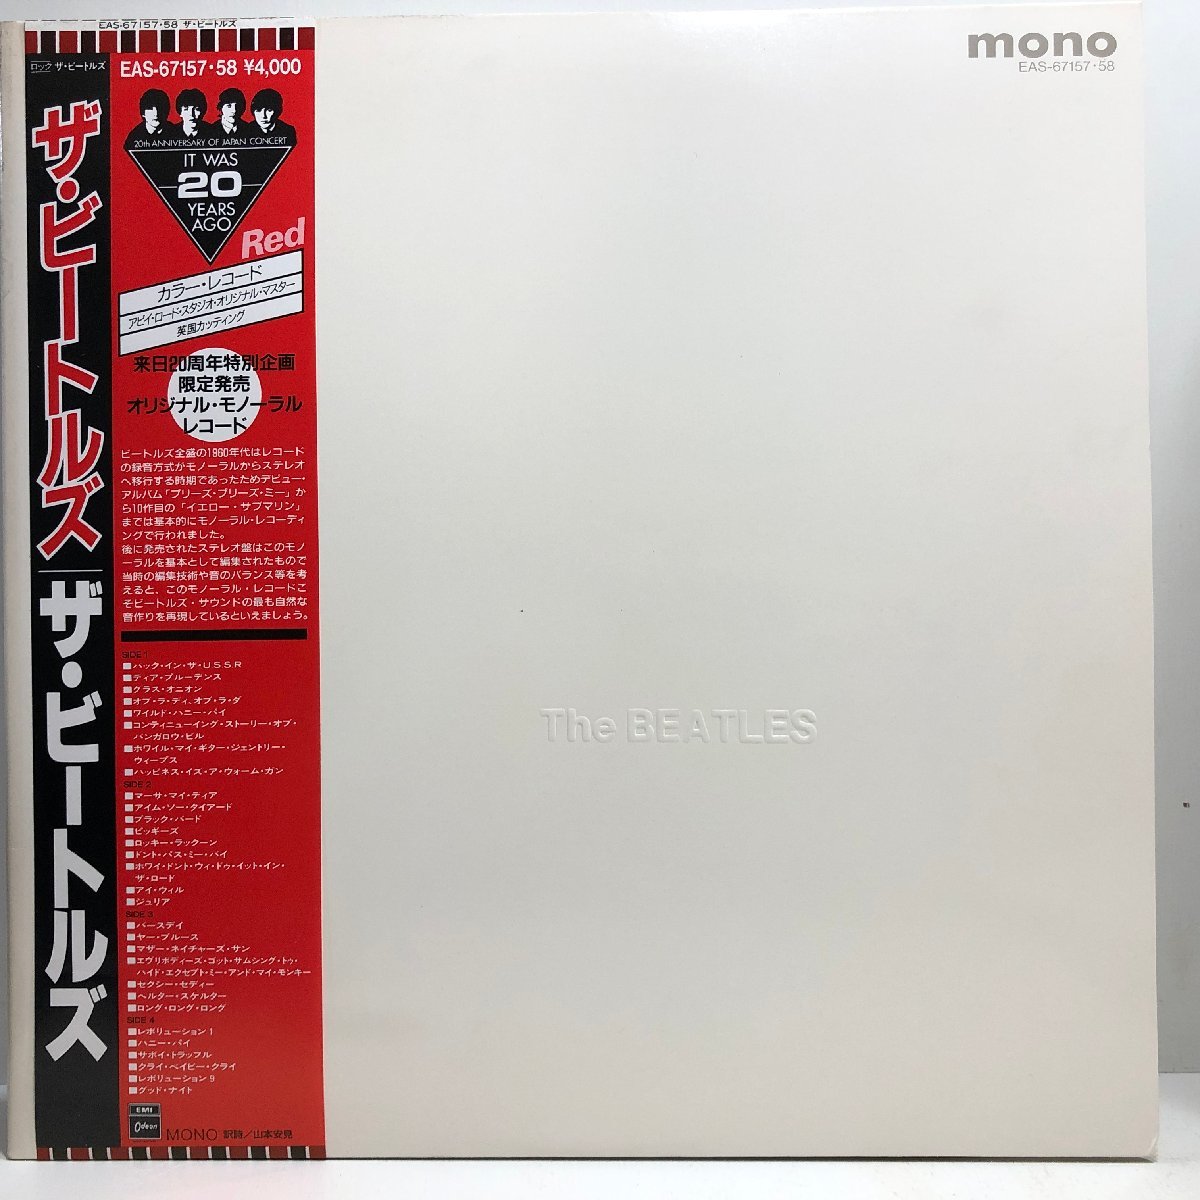 【赤盤 2LP】ザ・ビートルズ / THE BEATLES（ホワイトアルバム）/ MONO Wジャケ 解説・歌詞・対訳付 ’86年発売盤 EMI EAS-67157